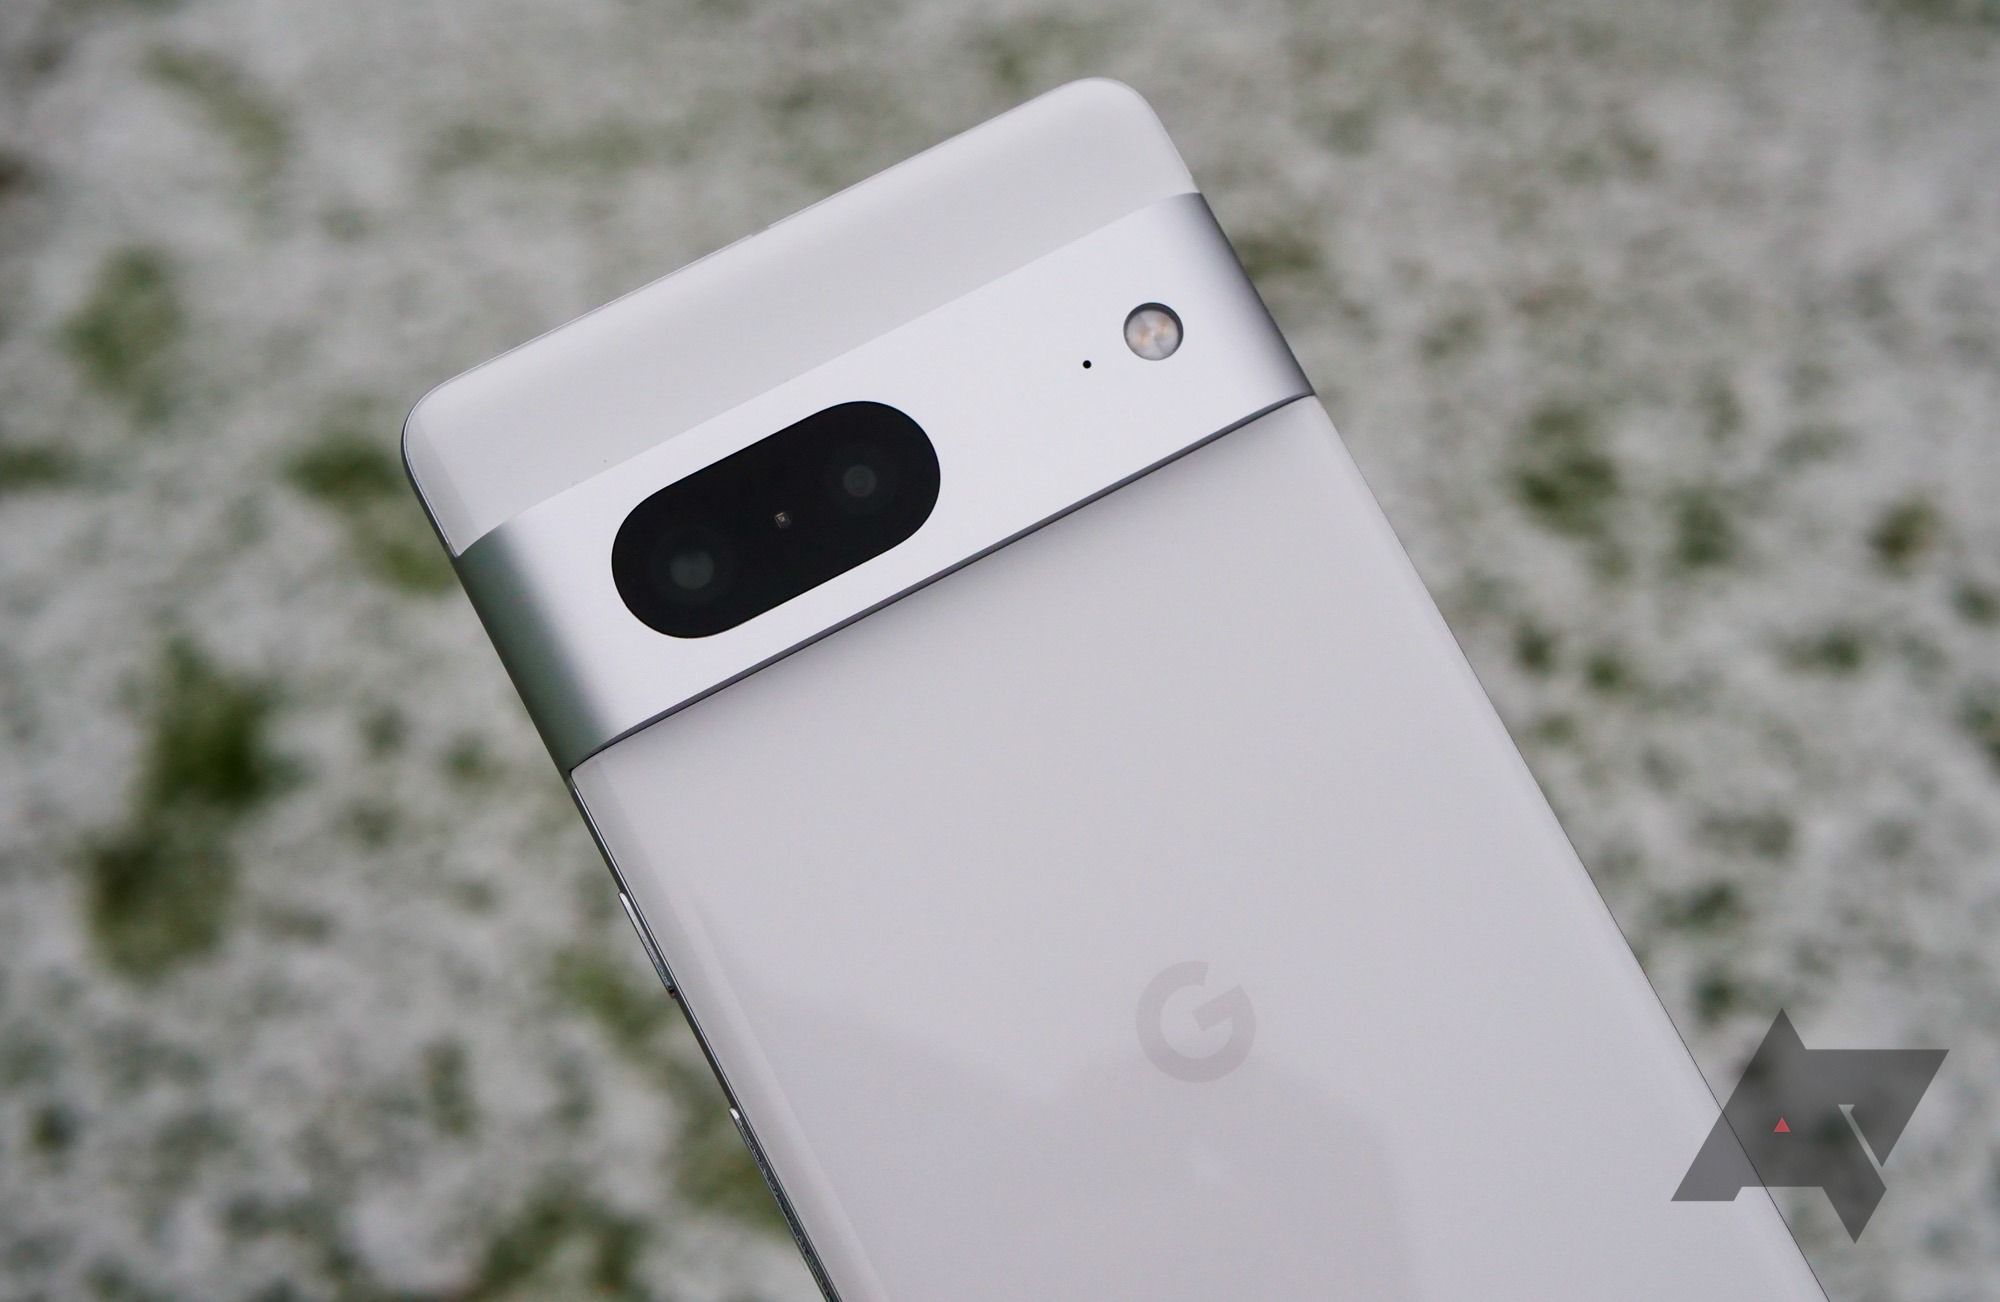 Um smartphone Google Pixel branco com o logotipo do Google em cinza e uma barra de câmera horizontal de metal. 